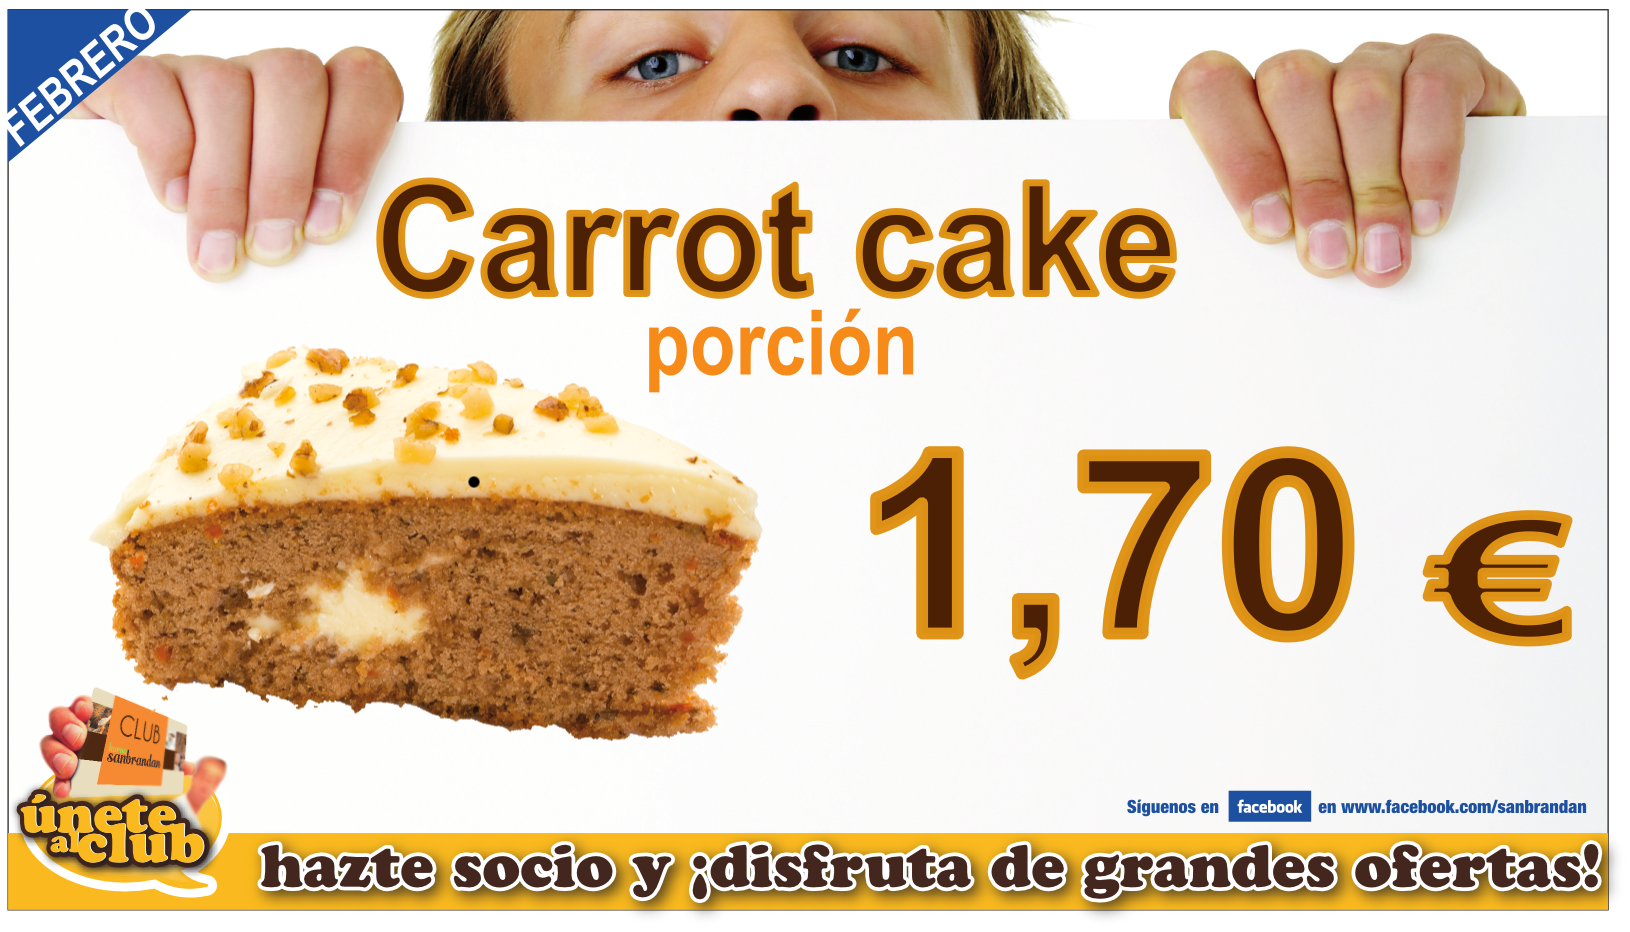 Porción tarta carrot cake por 1,70 €